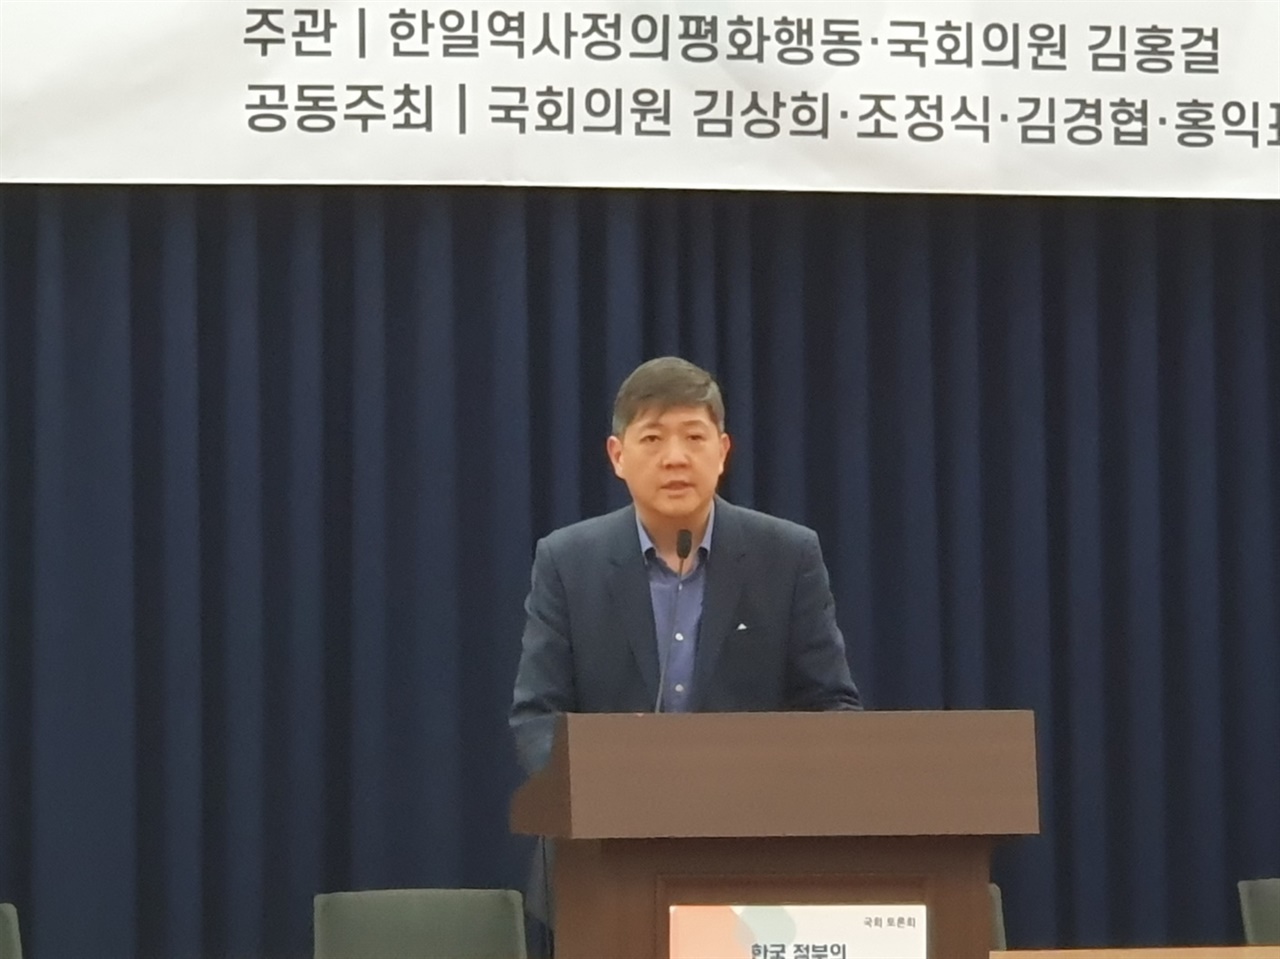 국회의원회관 소회의실에서 열린 국회토론회에서 김홍걸 국회의원이 인사말을  하고 있다.